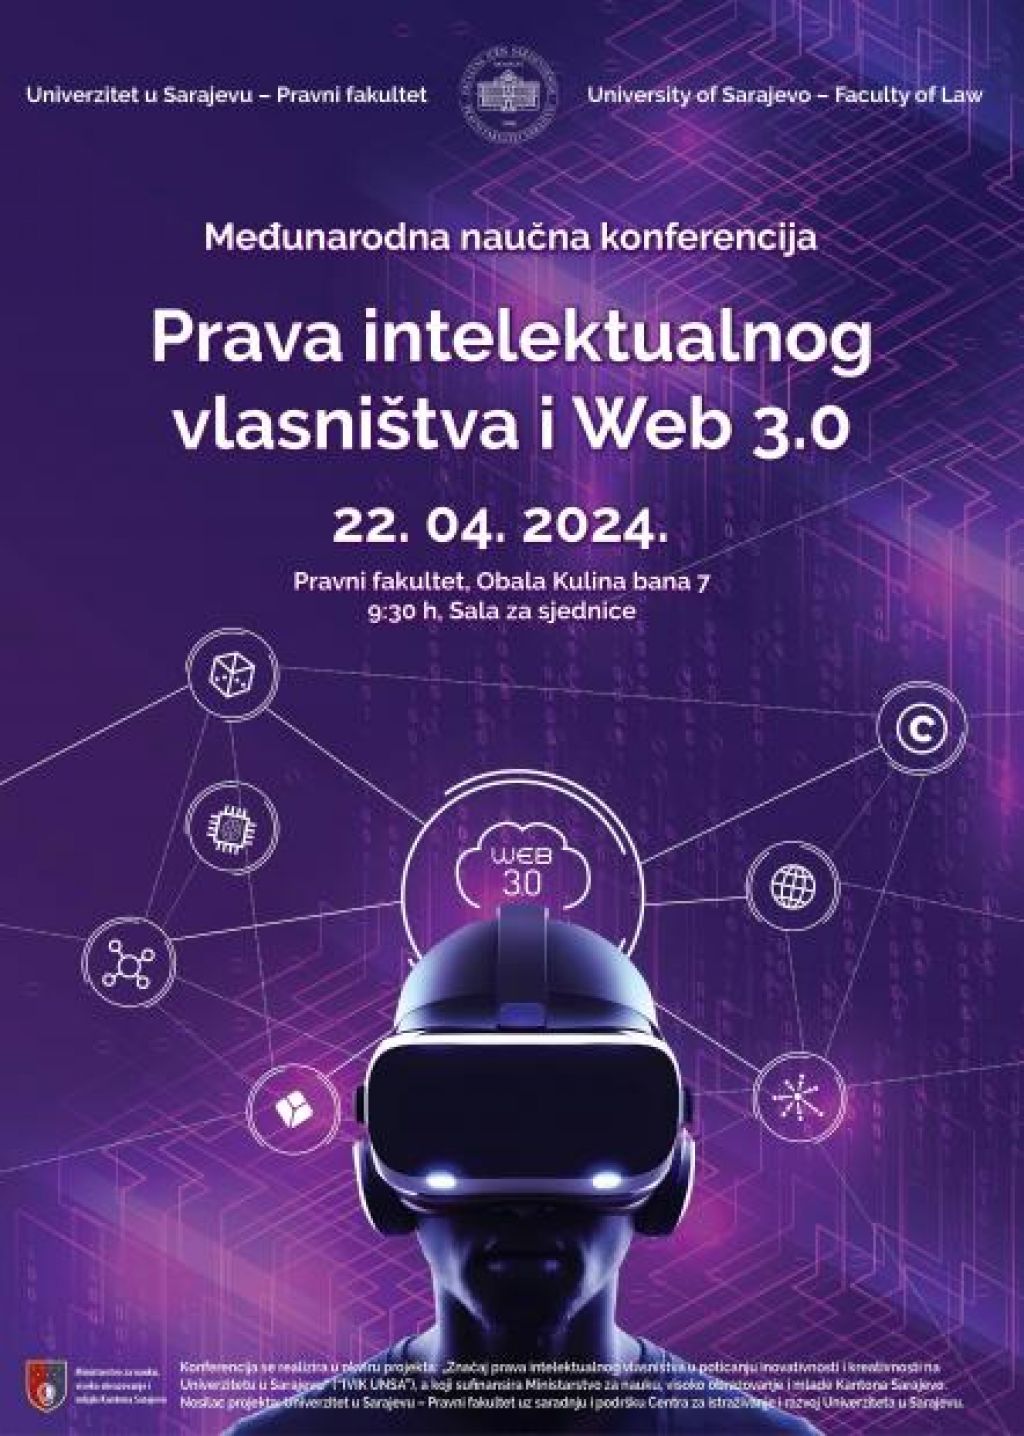 Međunarodna naučna konferencija "Prava intelektualnog vlasništva i Web 3.0"  22. aprila u Sarajevu